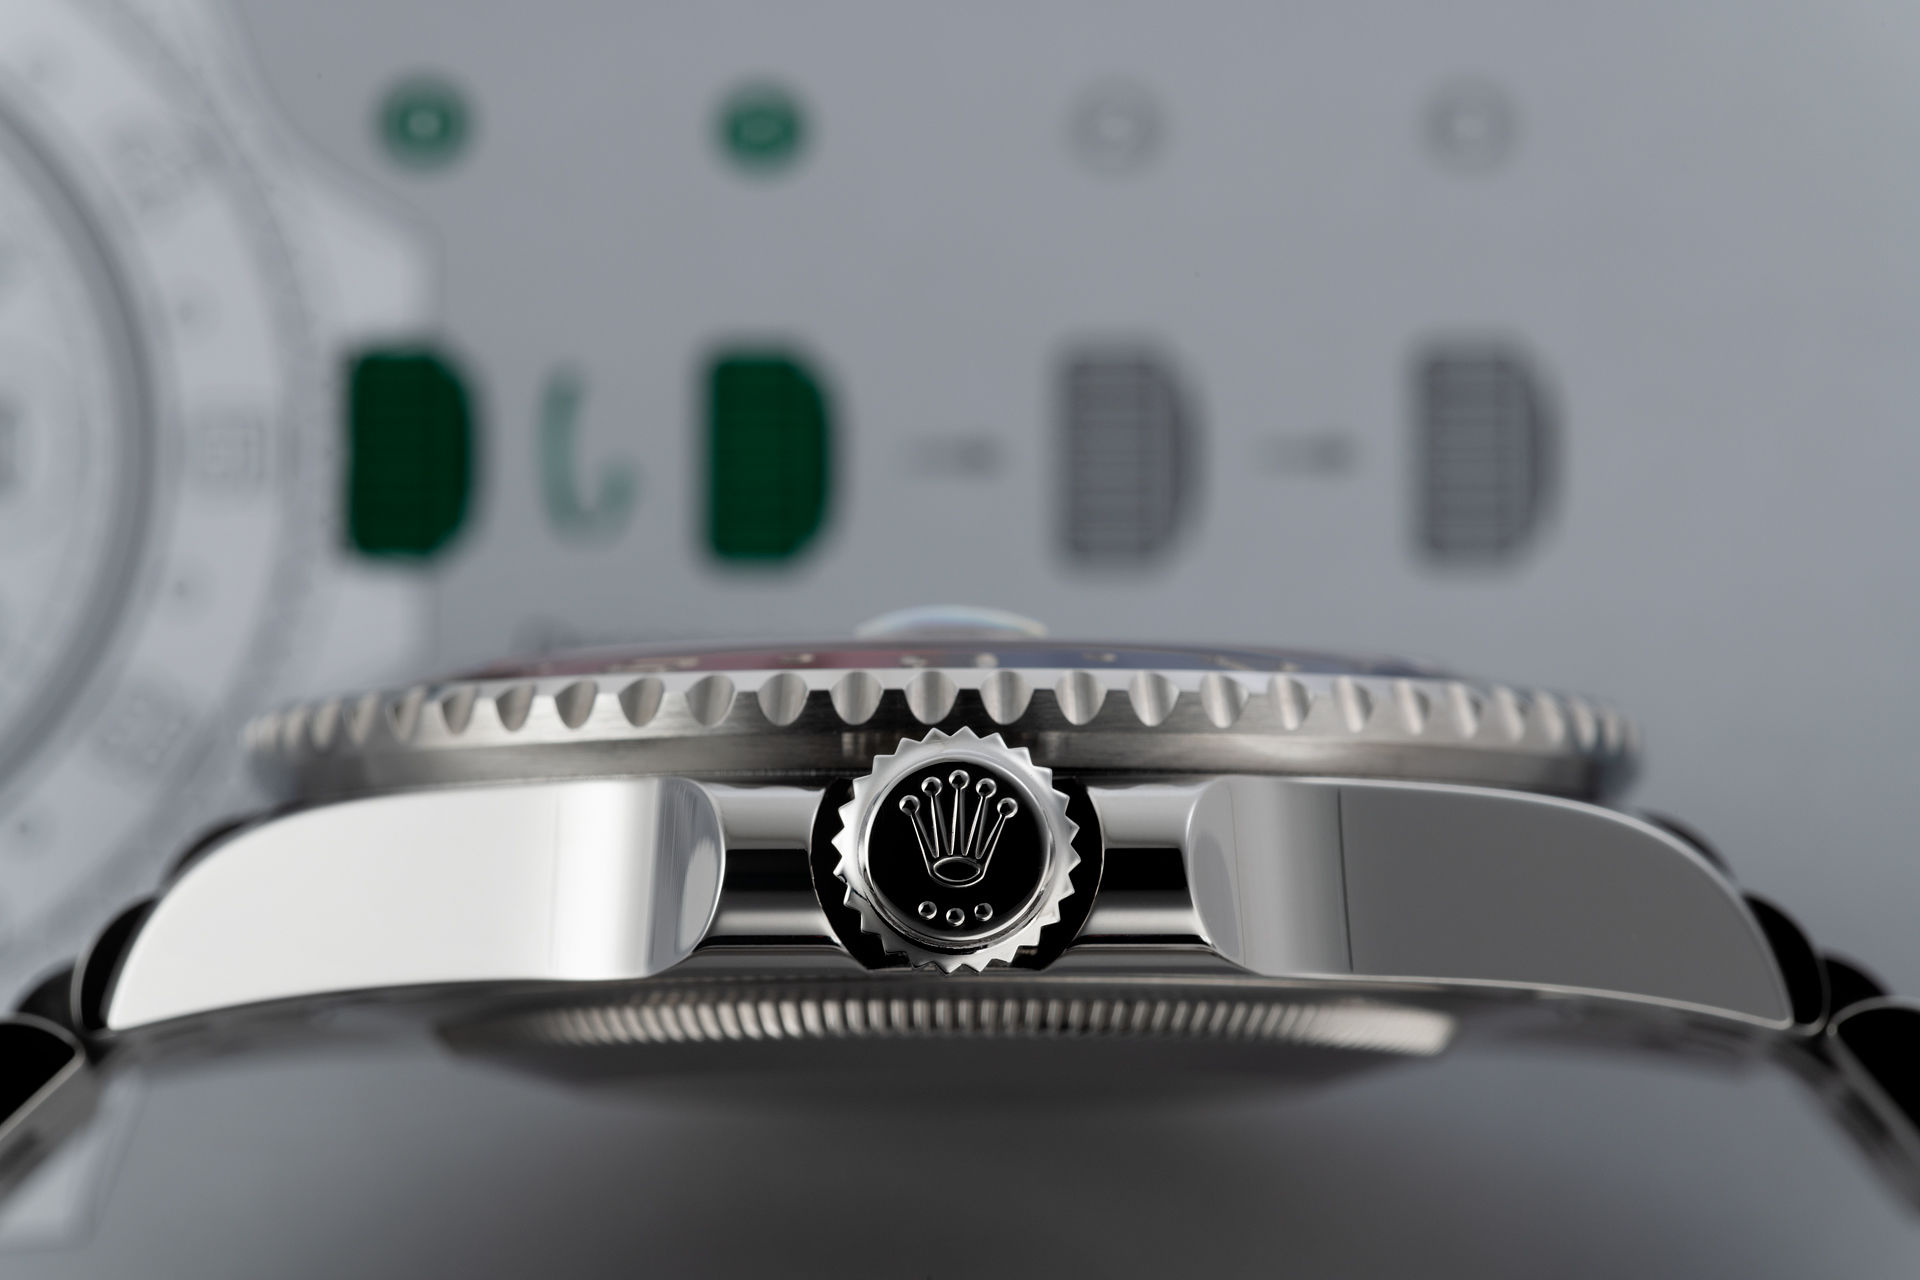 ref 126710BLRO | Brand New 'BLRO'  | Rolex GMT-Master II